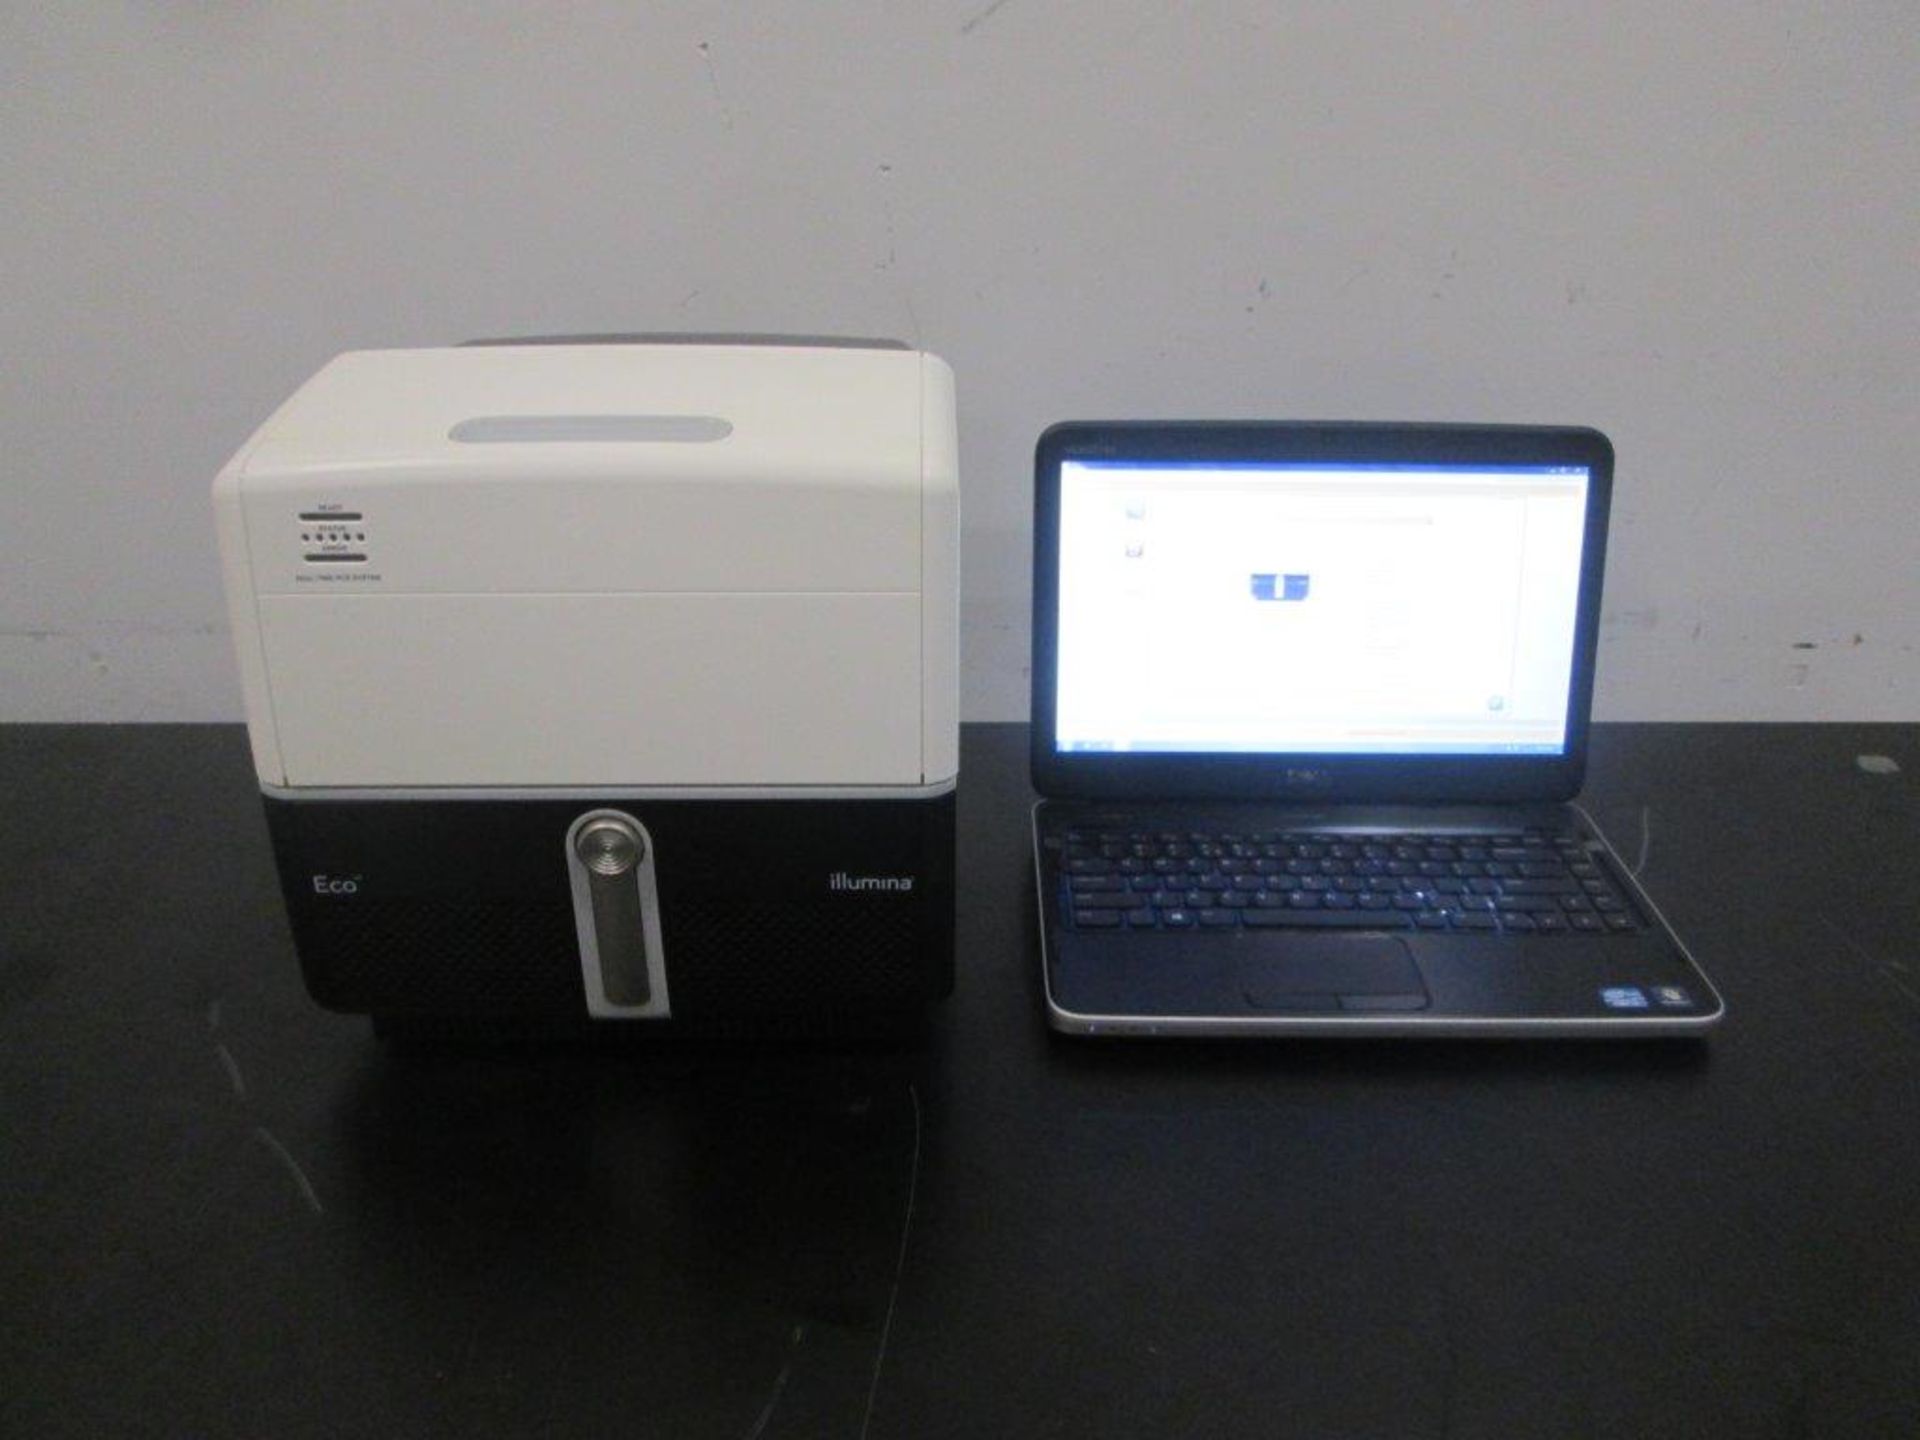 Illumina Eco Real-Time PCR System